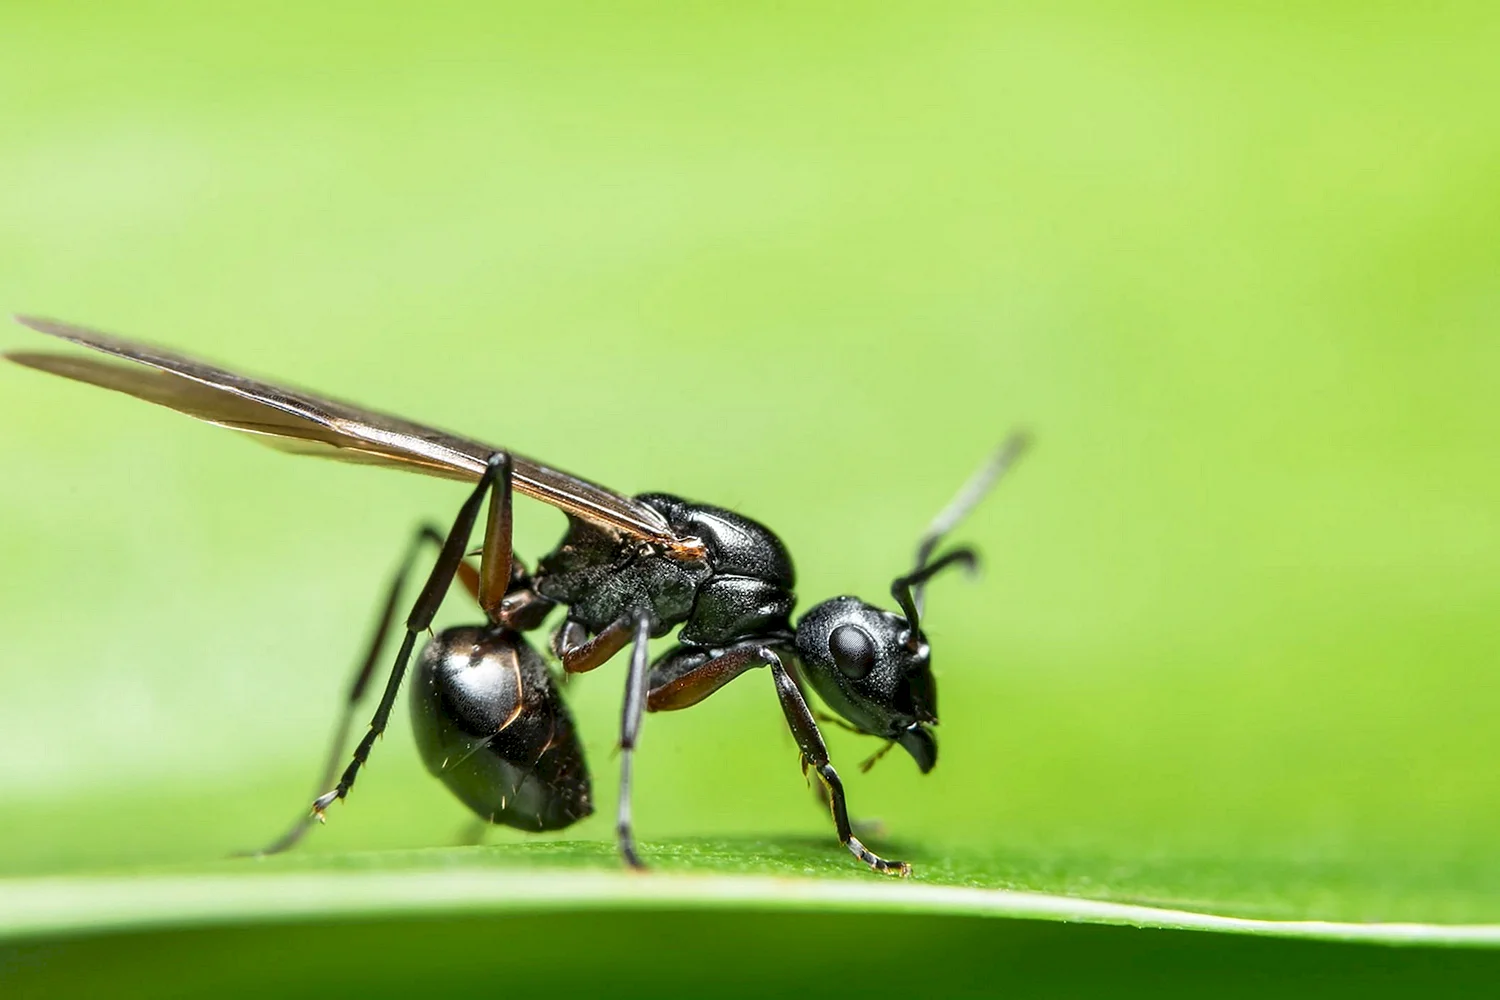 Camponotus herculeanus sachalinensis